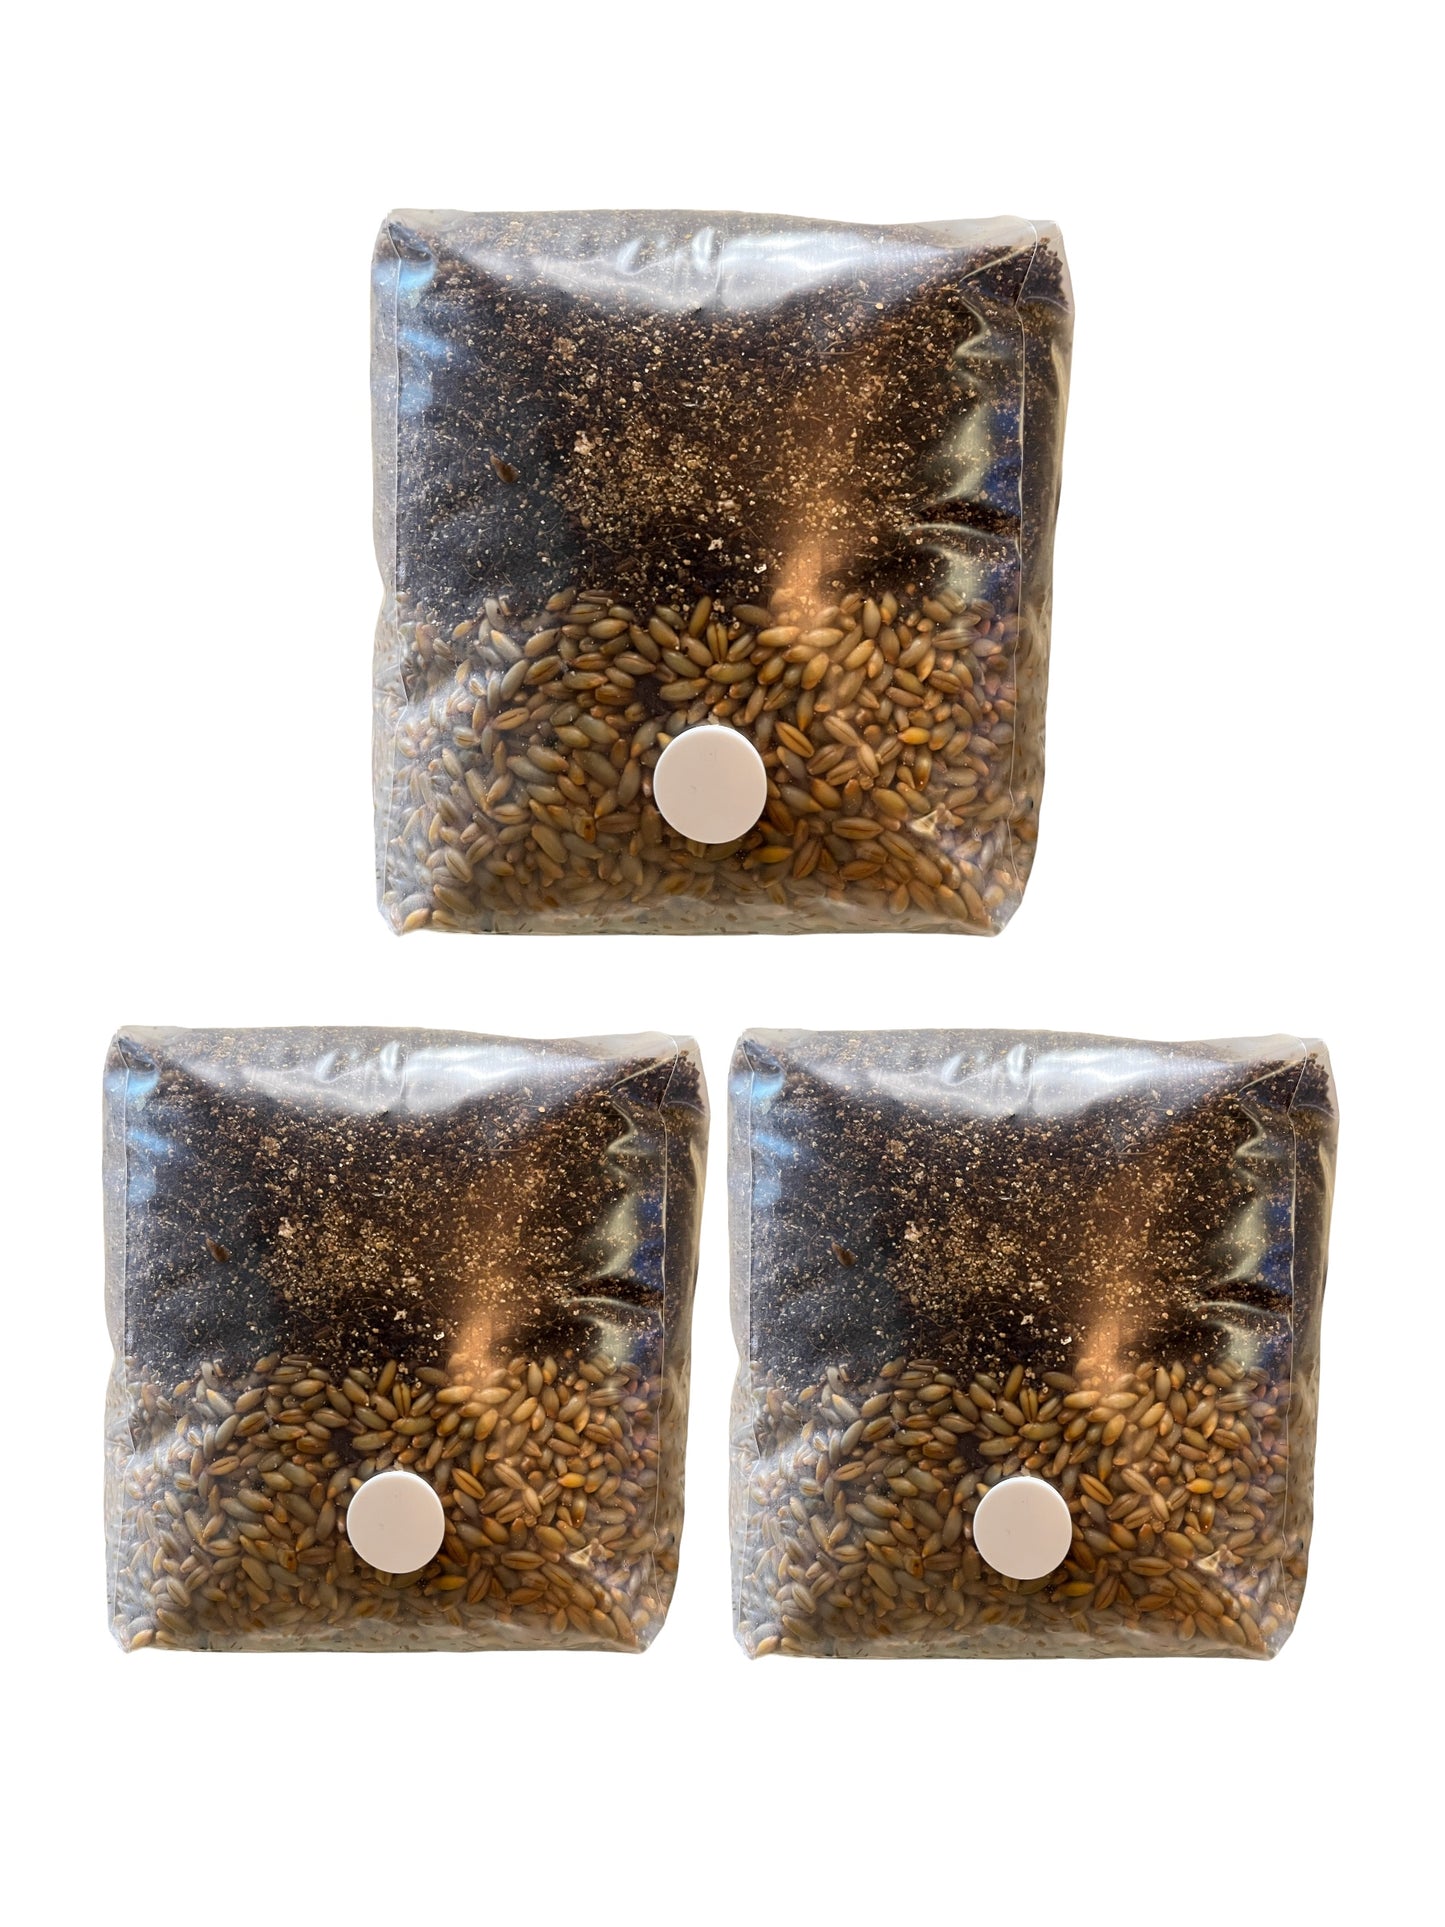 All-in-One MyndSpawn Mushroom Grow Bag (3 Pack)